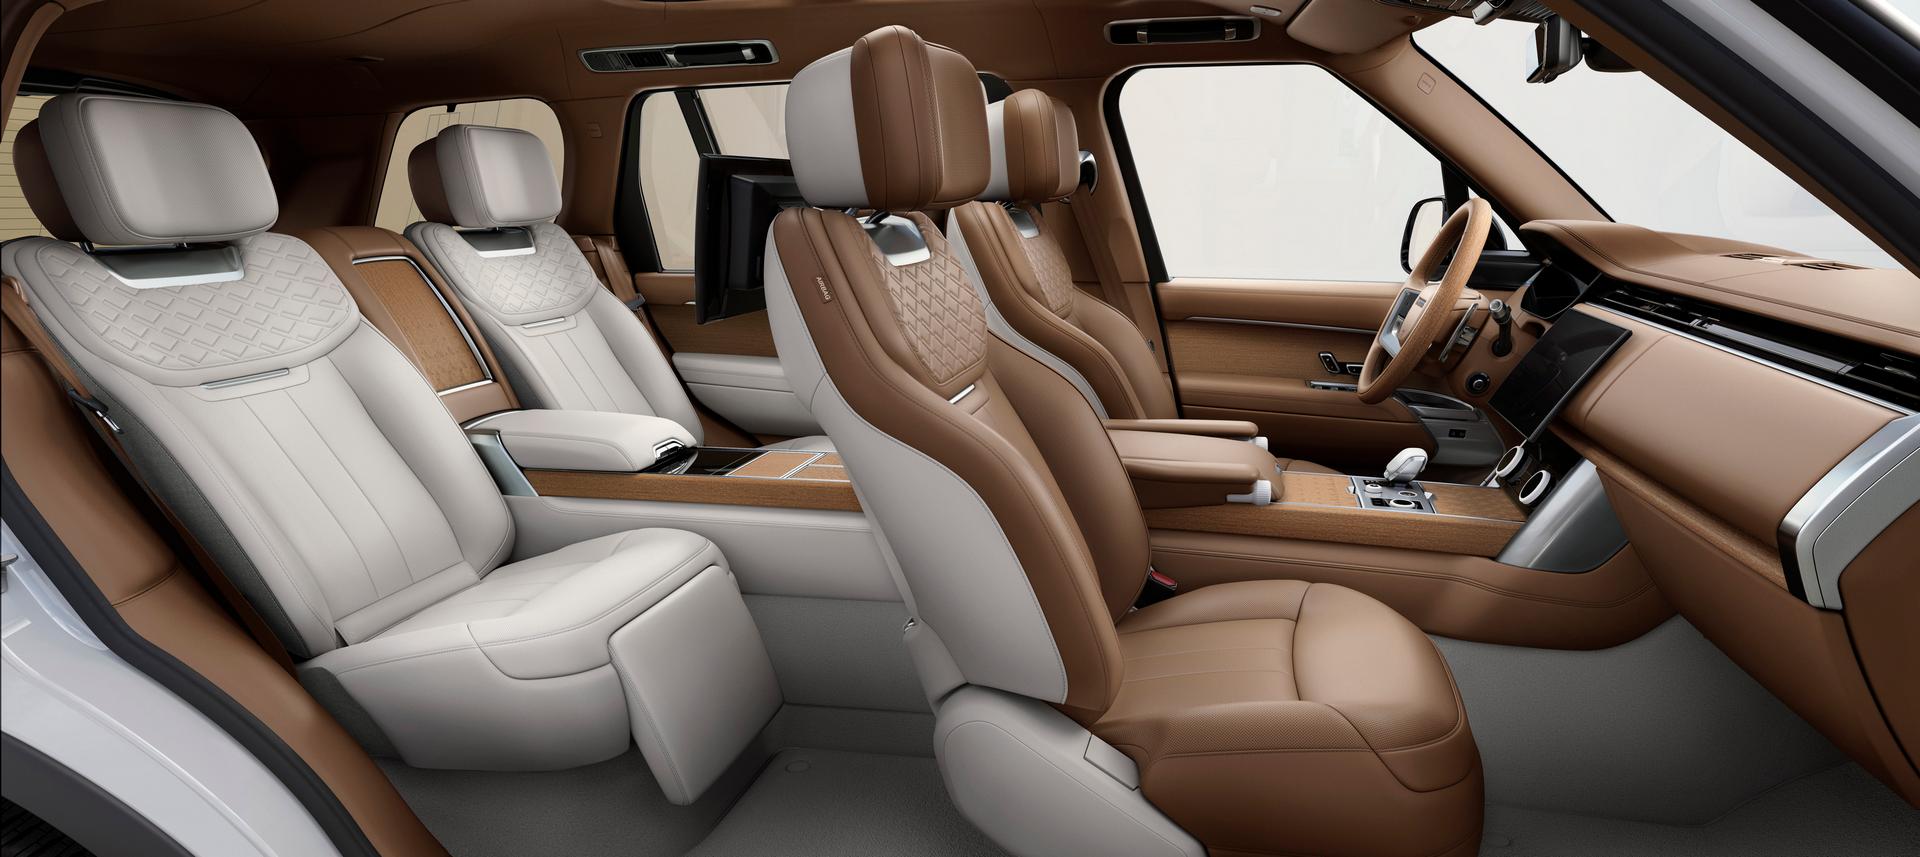 2022 Range Rover 4 seats